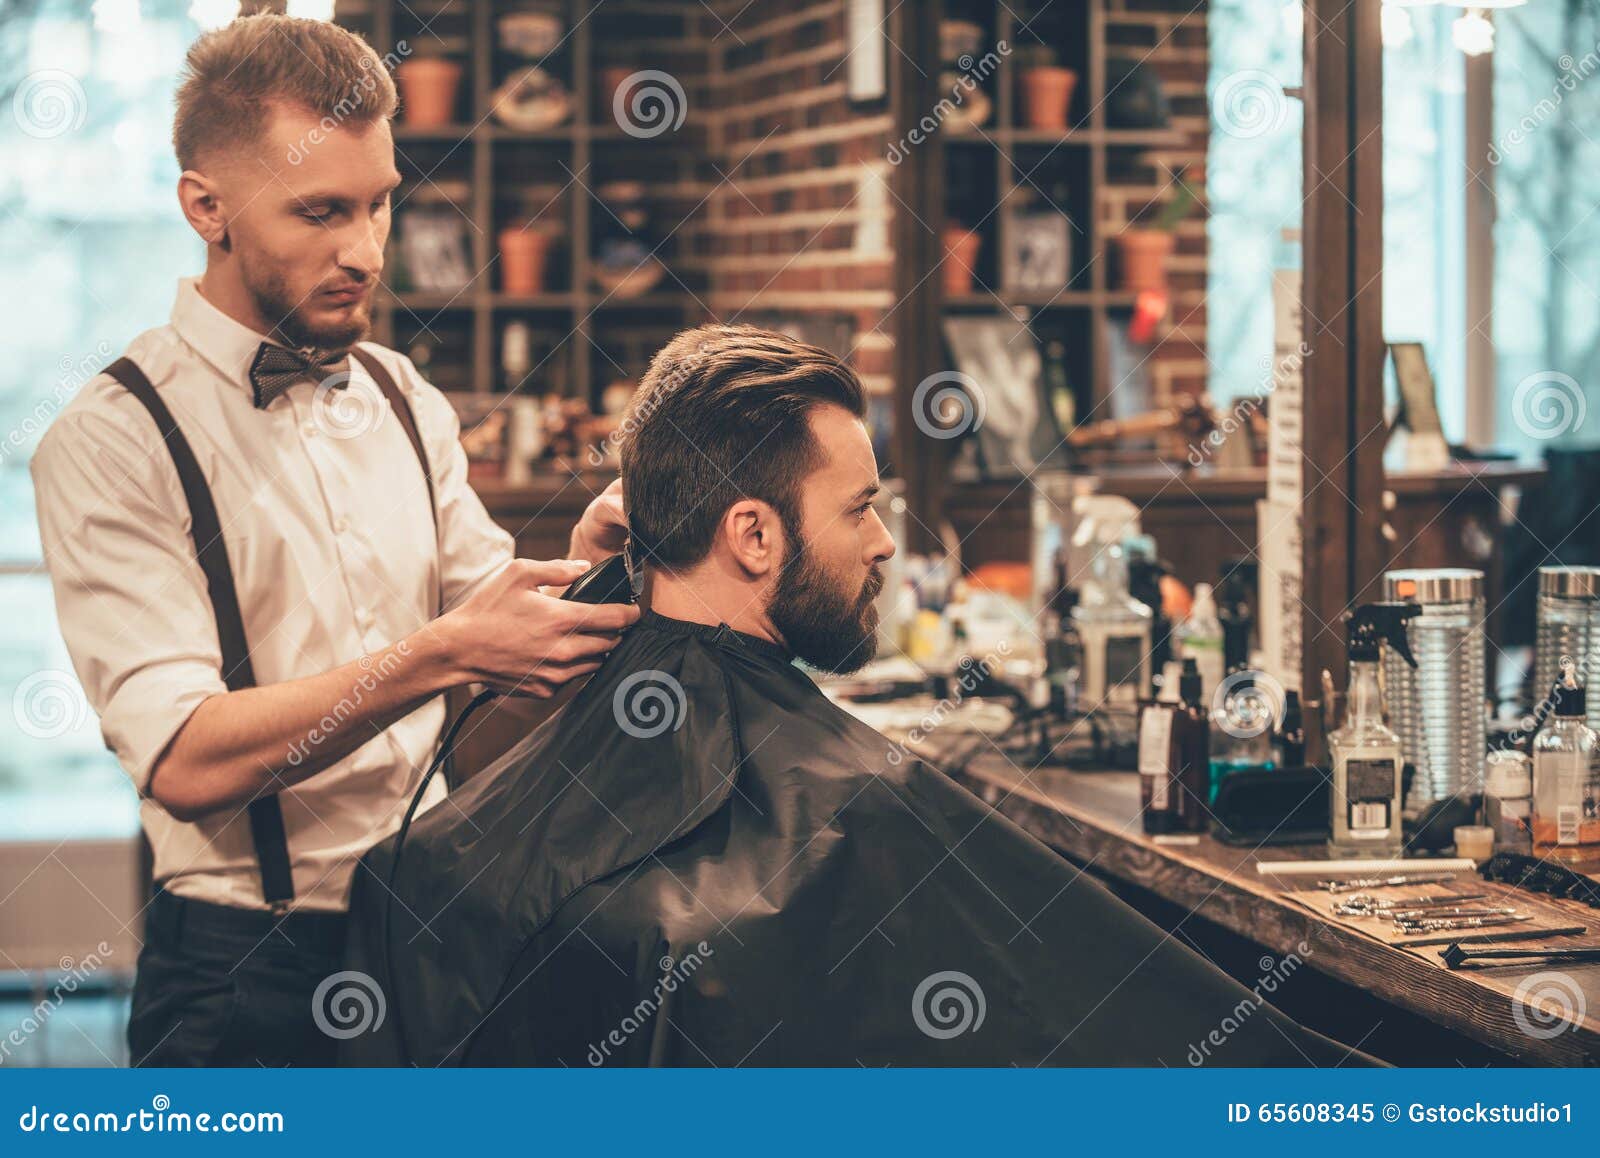 perfect trim at barbershop.